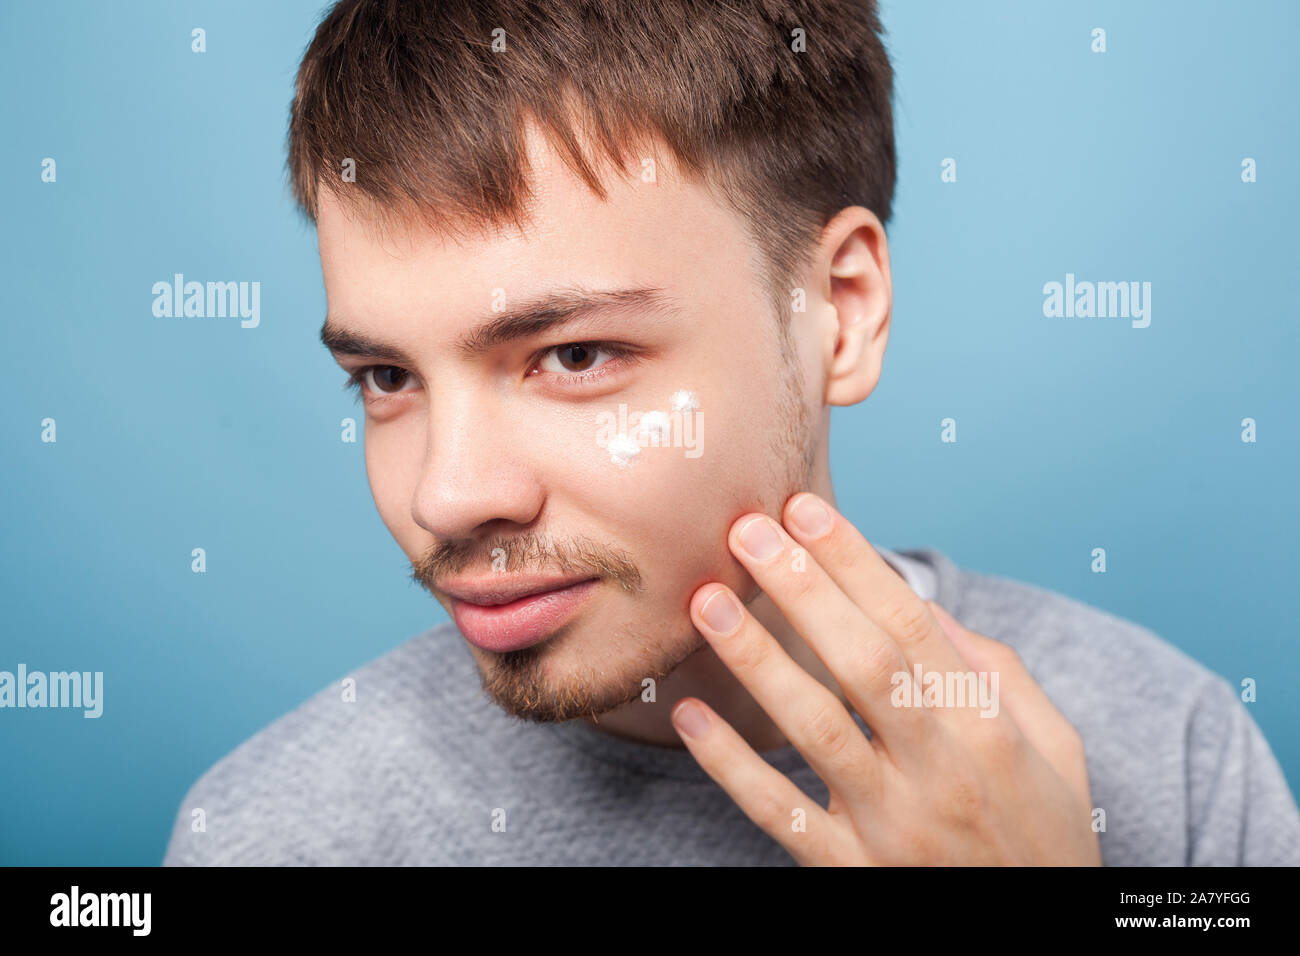 Porträt der jungen brünetten Mann mit dem kleinen Bart und Schnurrbart Anwendung Gesichtscreme unter Augen, Behandlung oder Feuchtigkeitscreme Kosmetik, Hautpflege Konzept. Ich Stockfoto